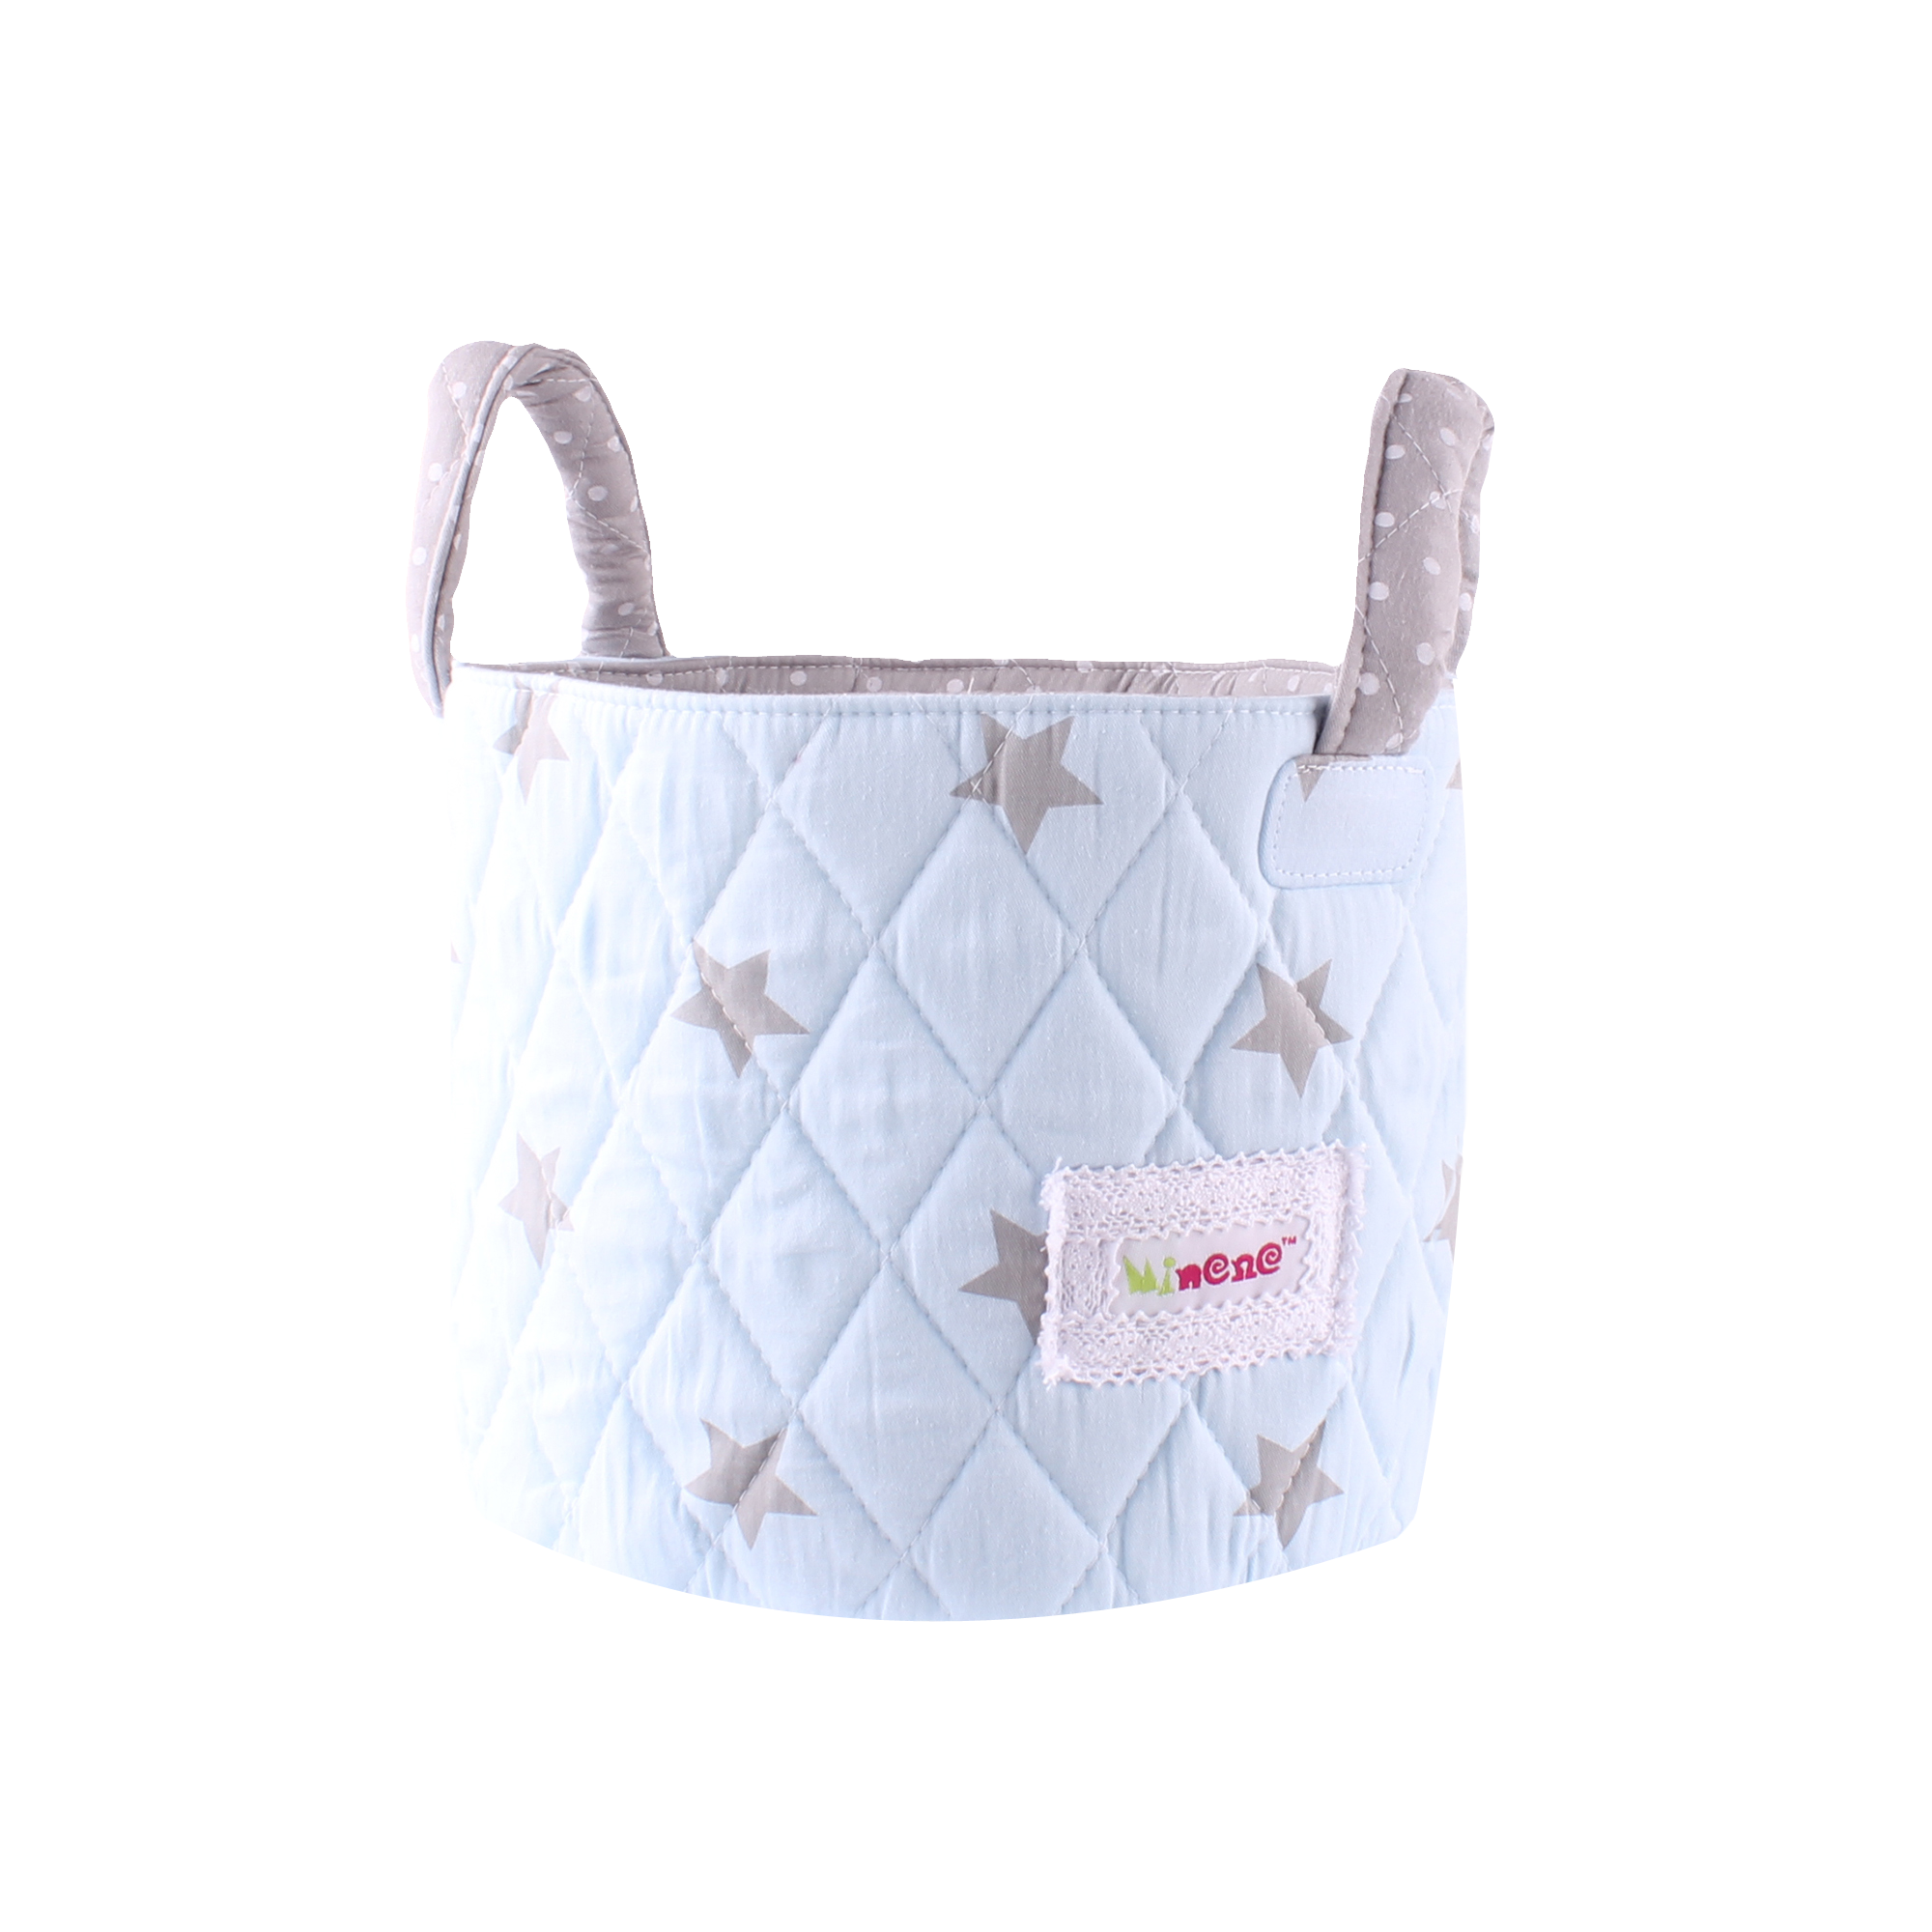 Cutest Newborn Gift Basket